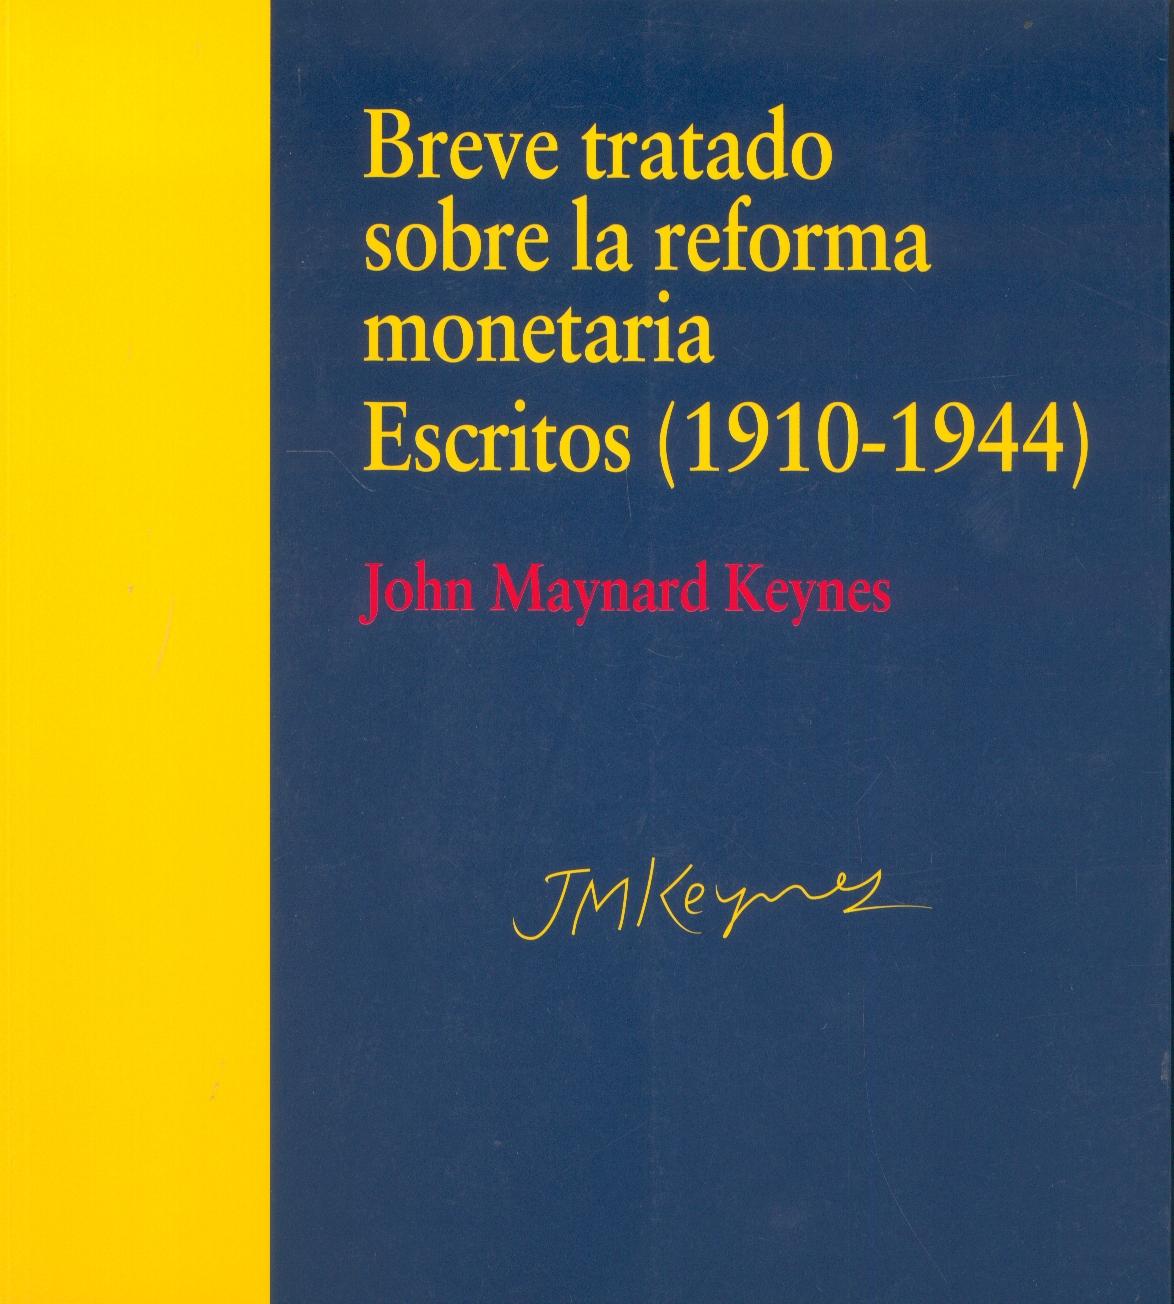 Breve Tratado sobre la Reforma Monetaria "Escritos 1910-1944"